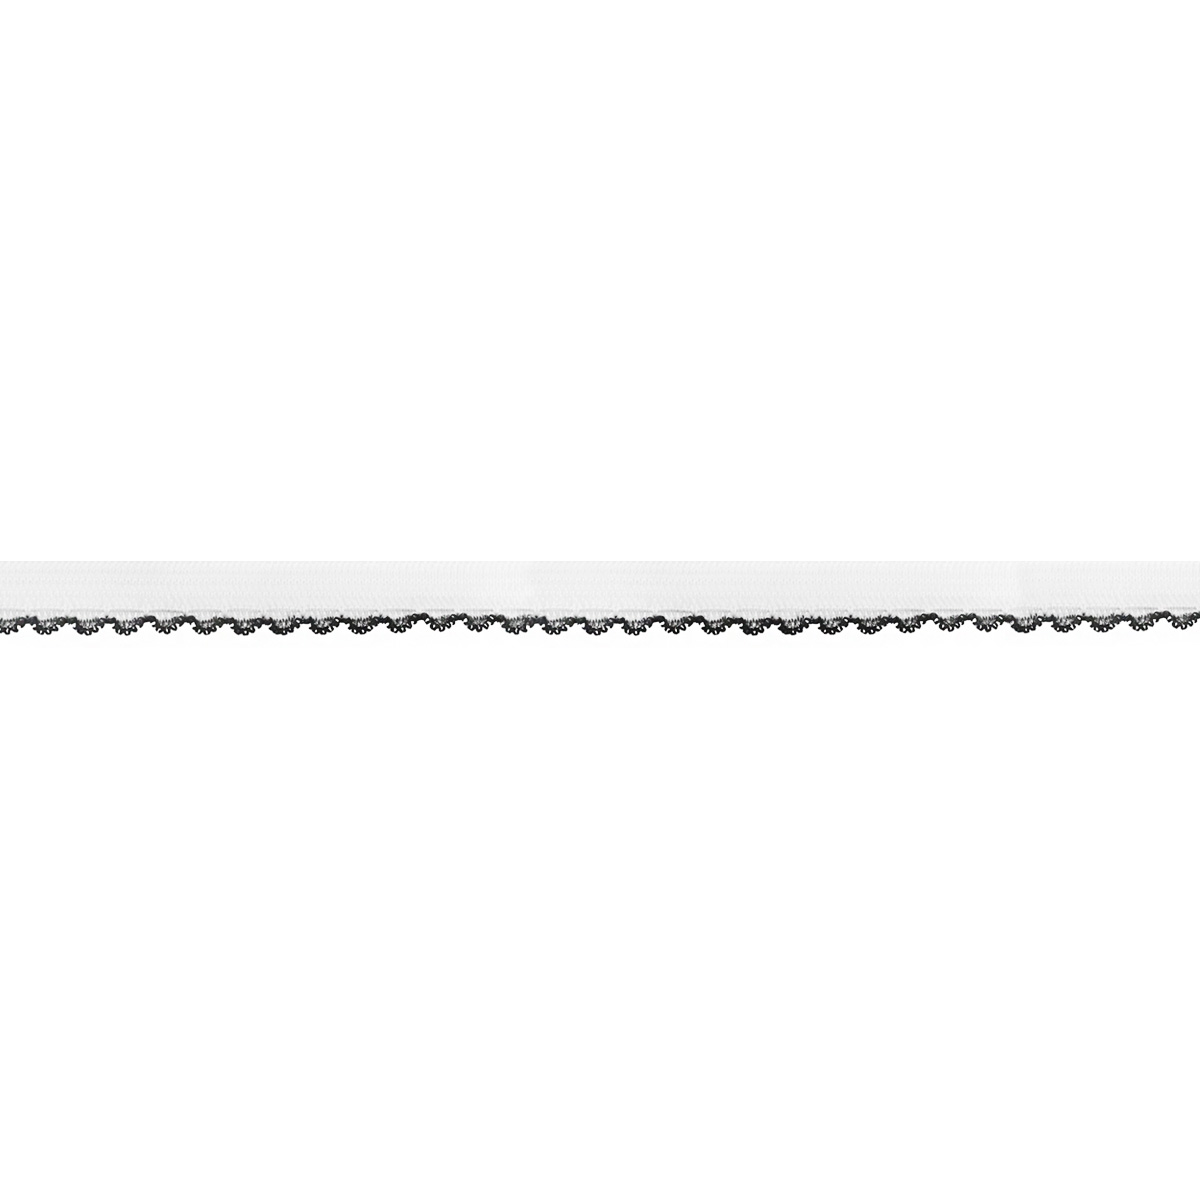 Резинка ажурная для нижнего белья арт. 9112-010 шир. 10 мм бело/черная (уп. 50 м)